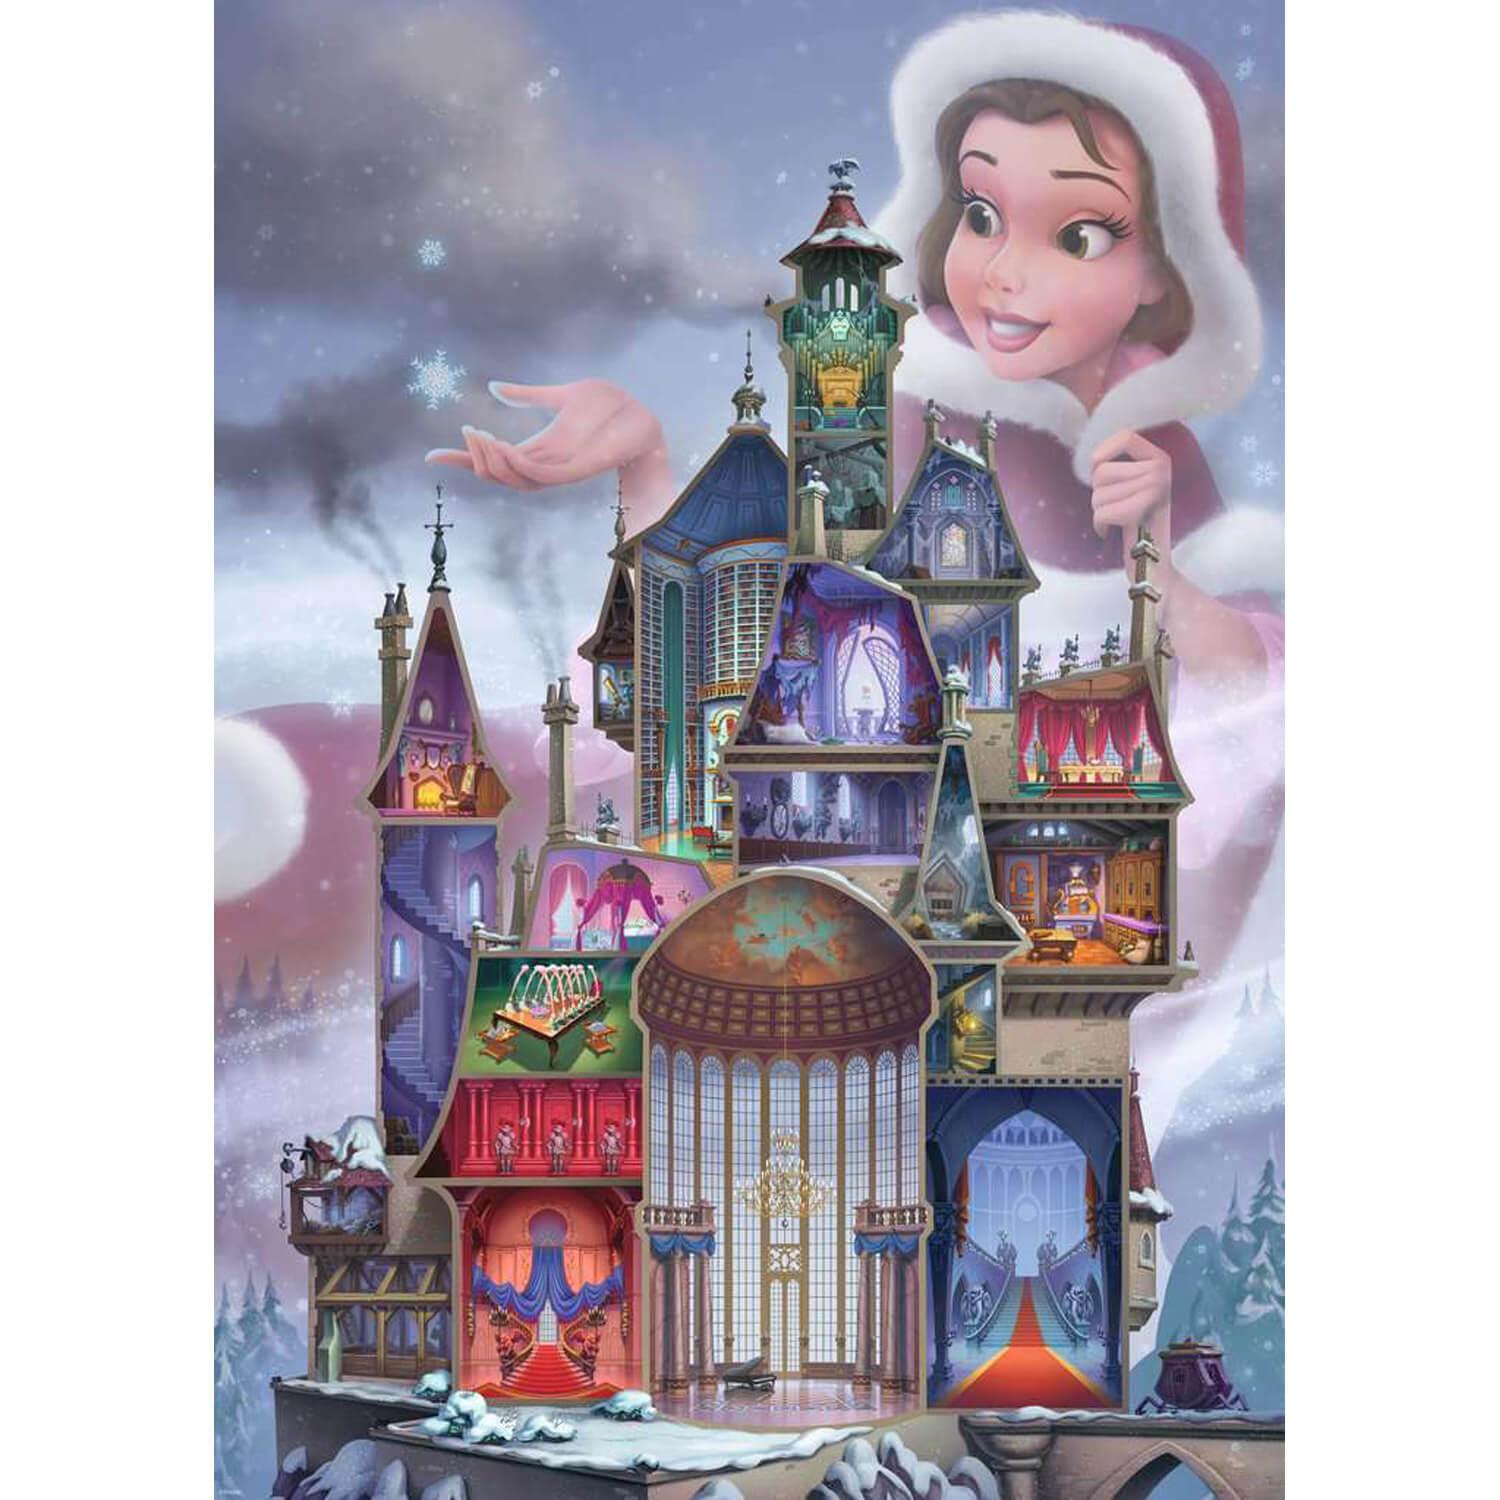 Puzzle 1000 pièces : Belle (Collection Château des Princesses Disney) -  Ravensburger - Rue des Puzzles